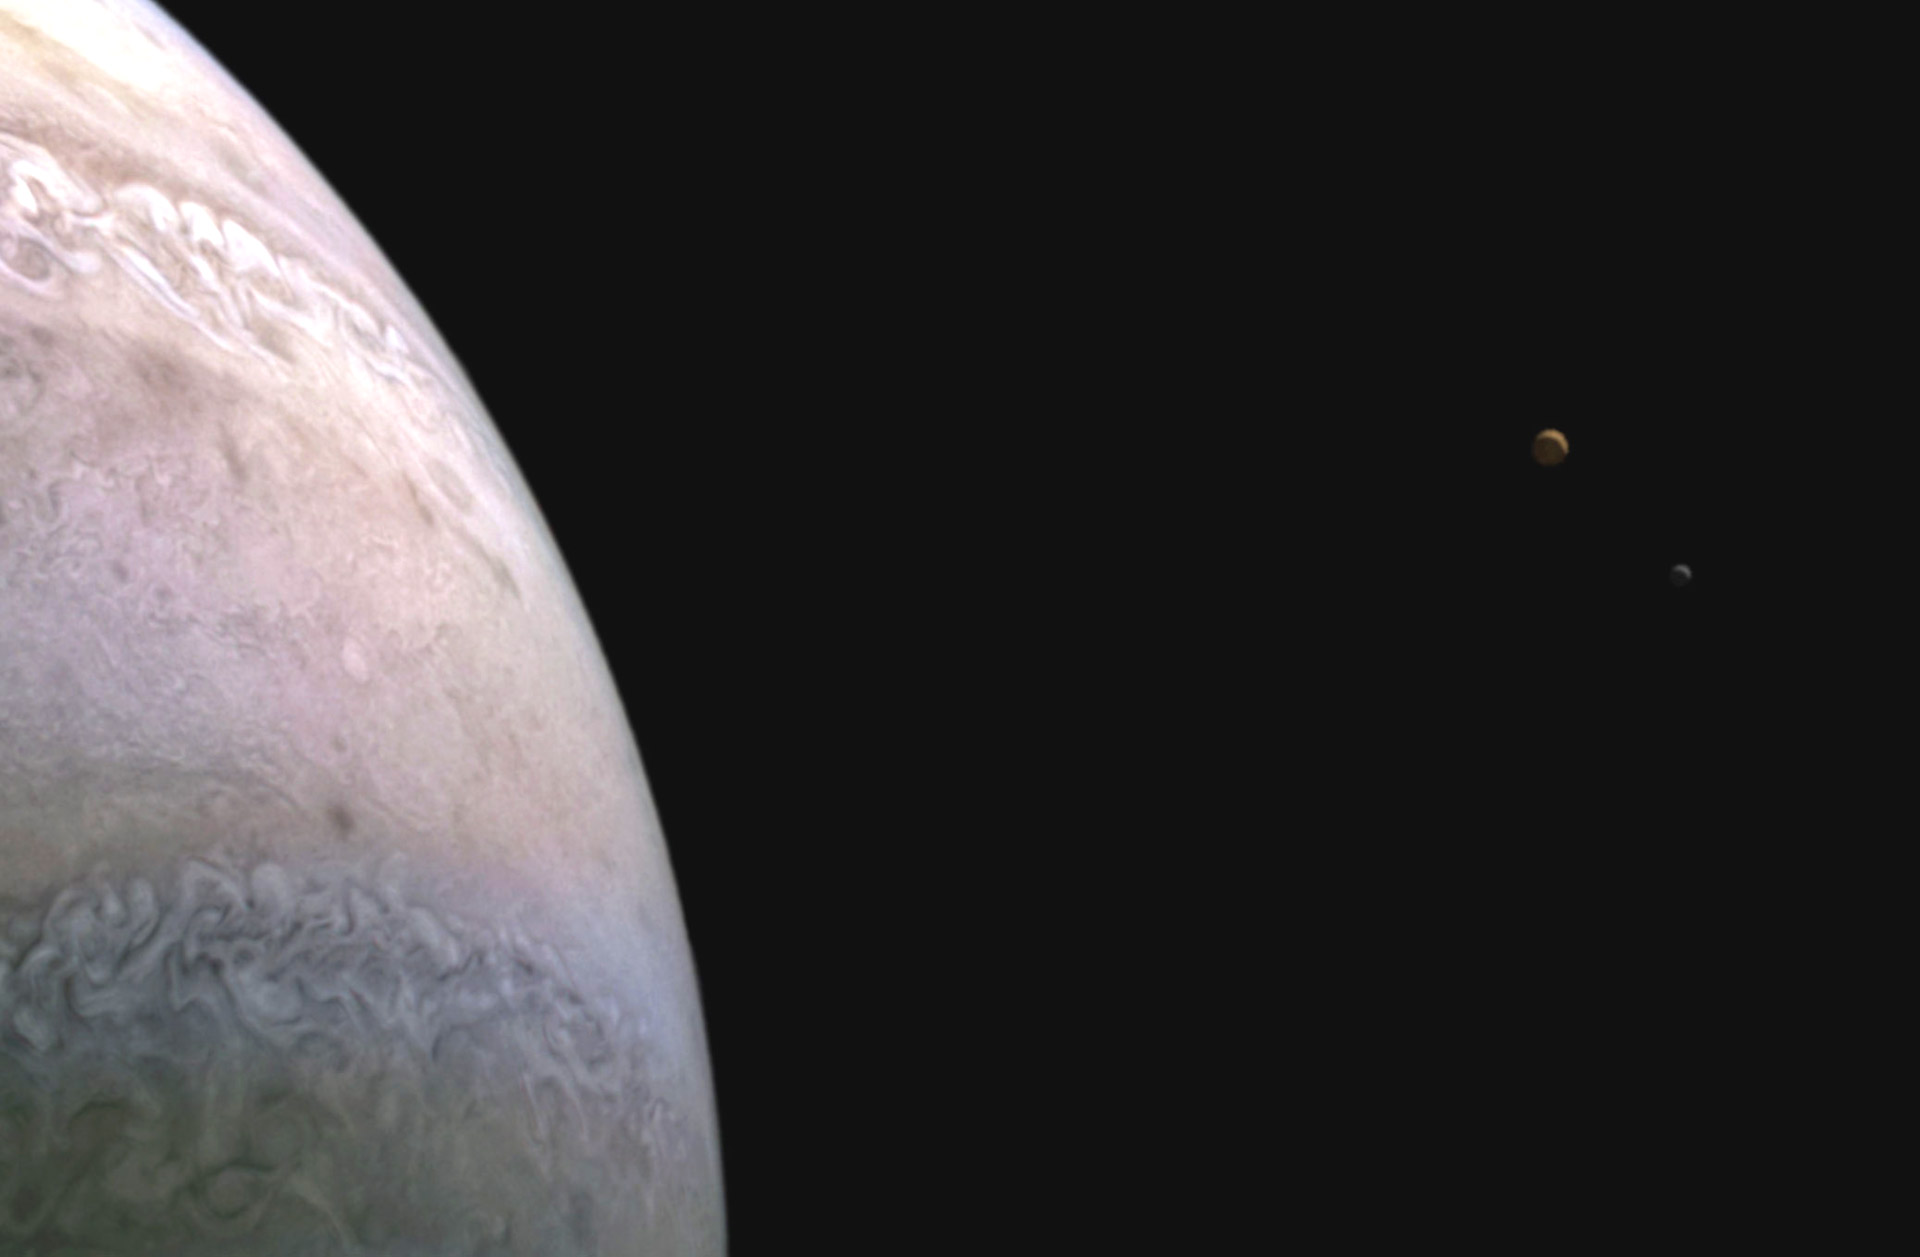 Космический зонд Juno увидел одновременно Юпитер и два его спутника - Ио и Европу